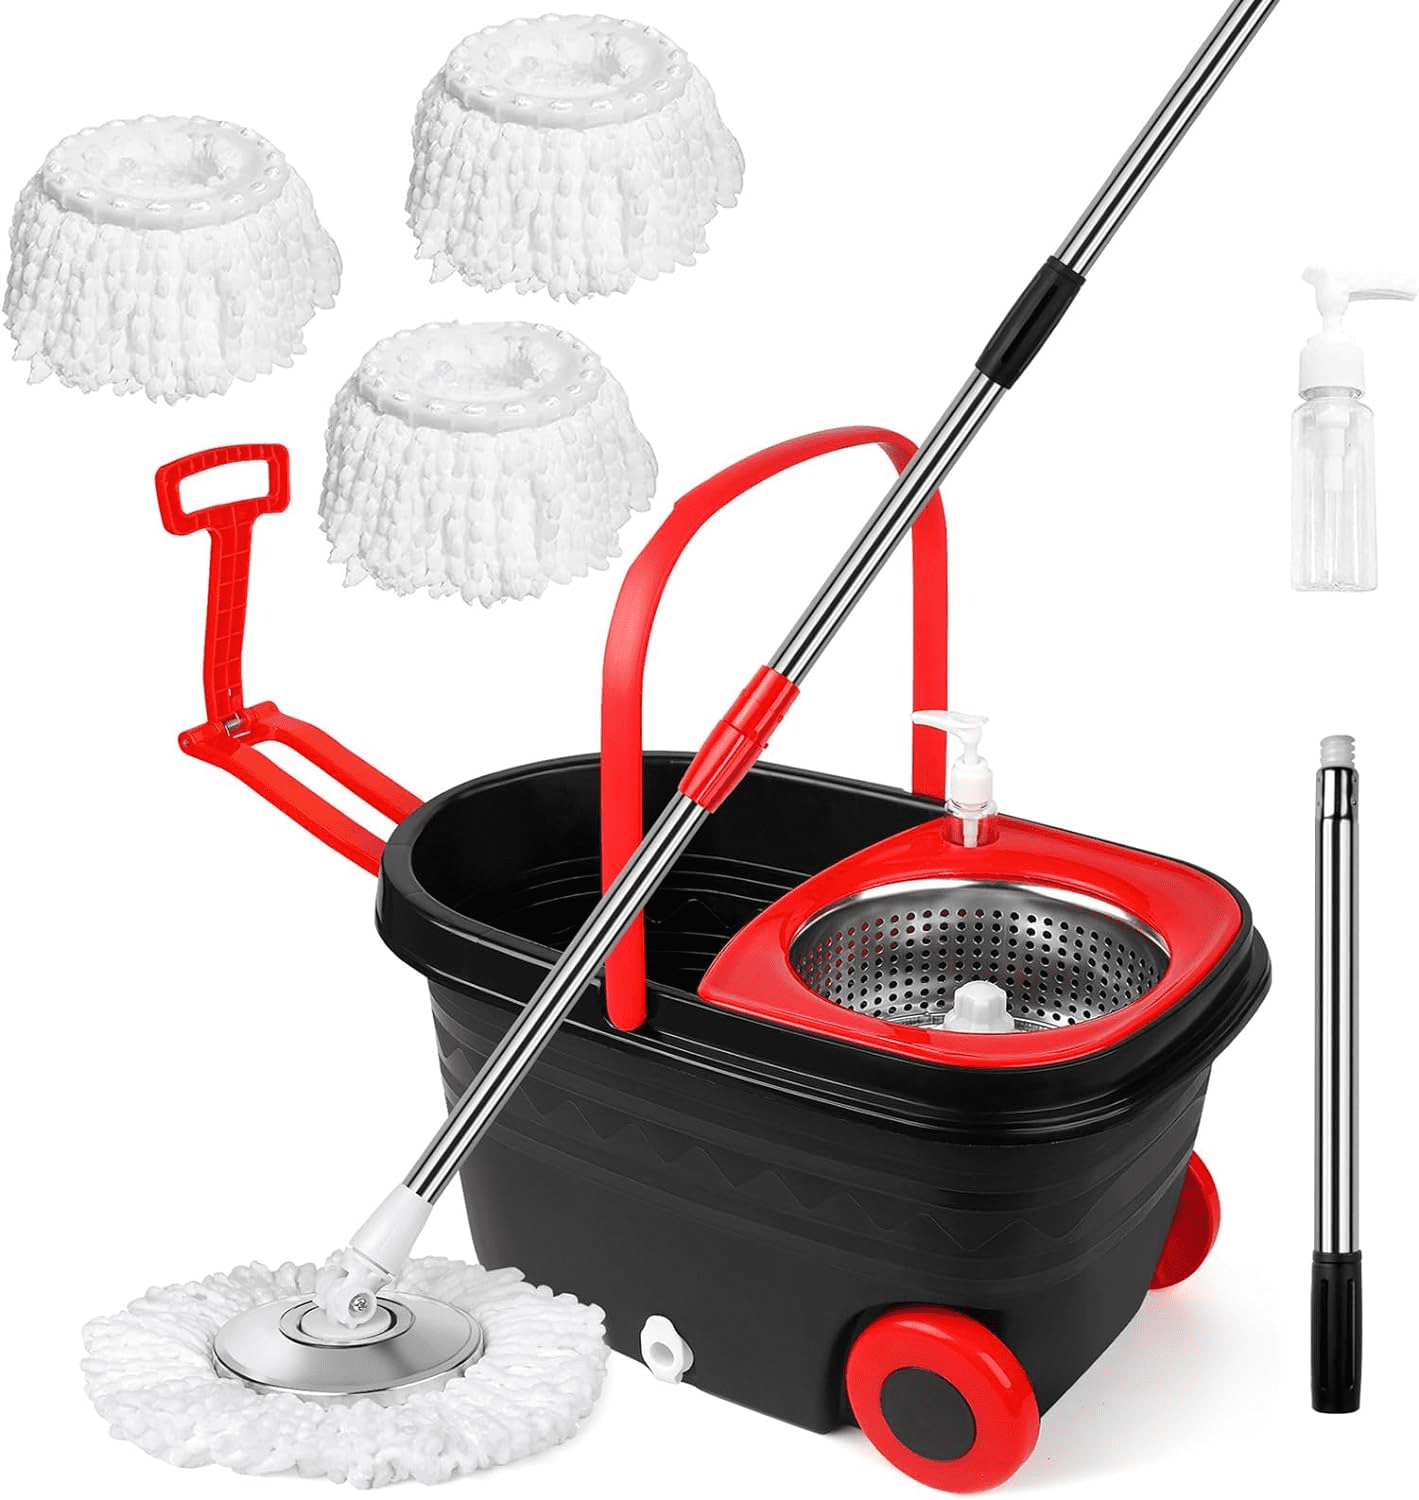 TheLAShop Spin Mop Bucket Set Floor Cleaner with 8 Microfiber Mop